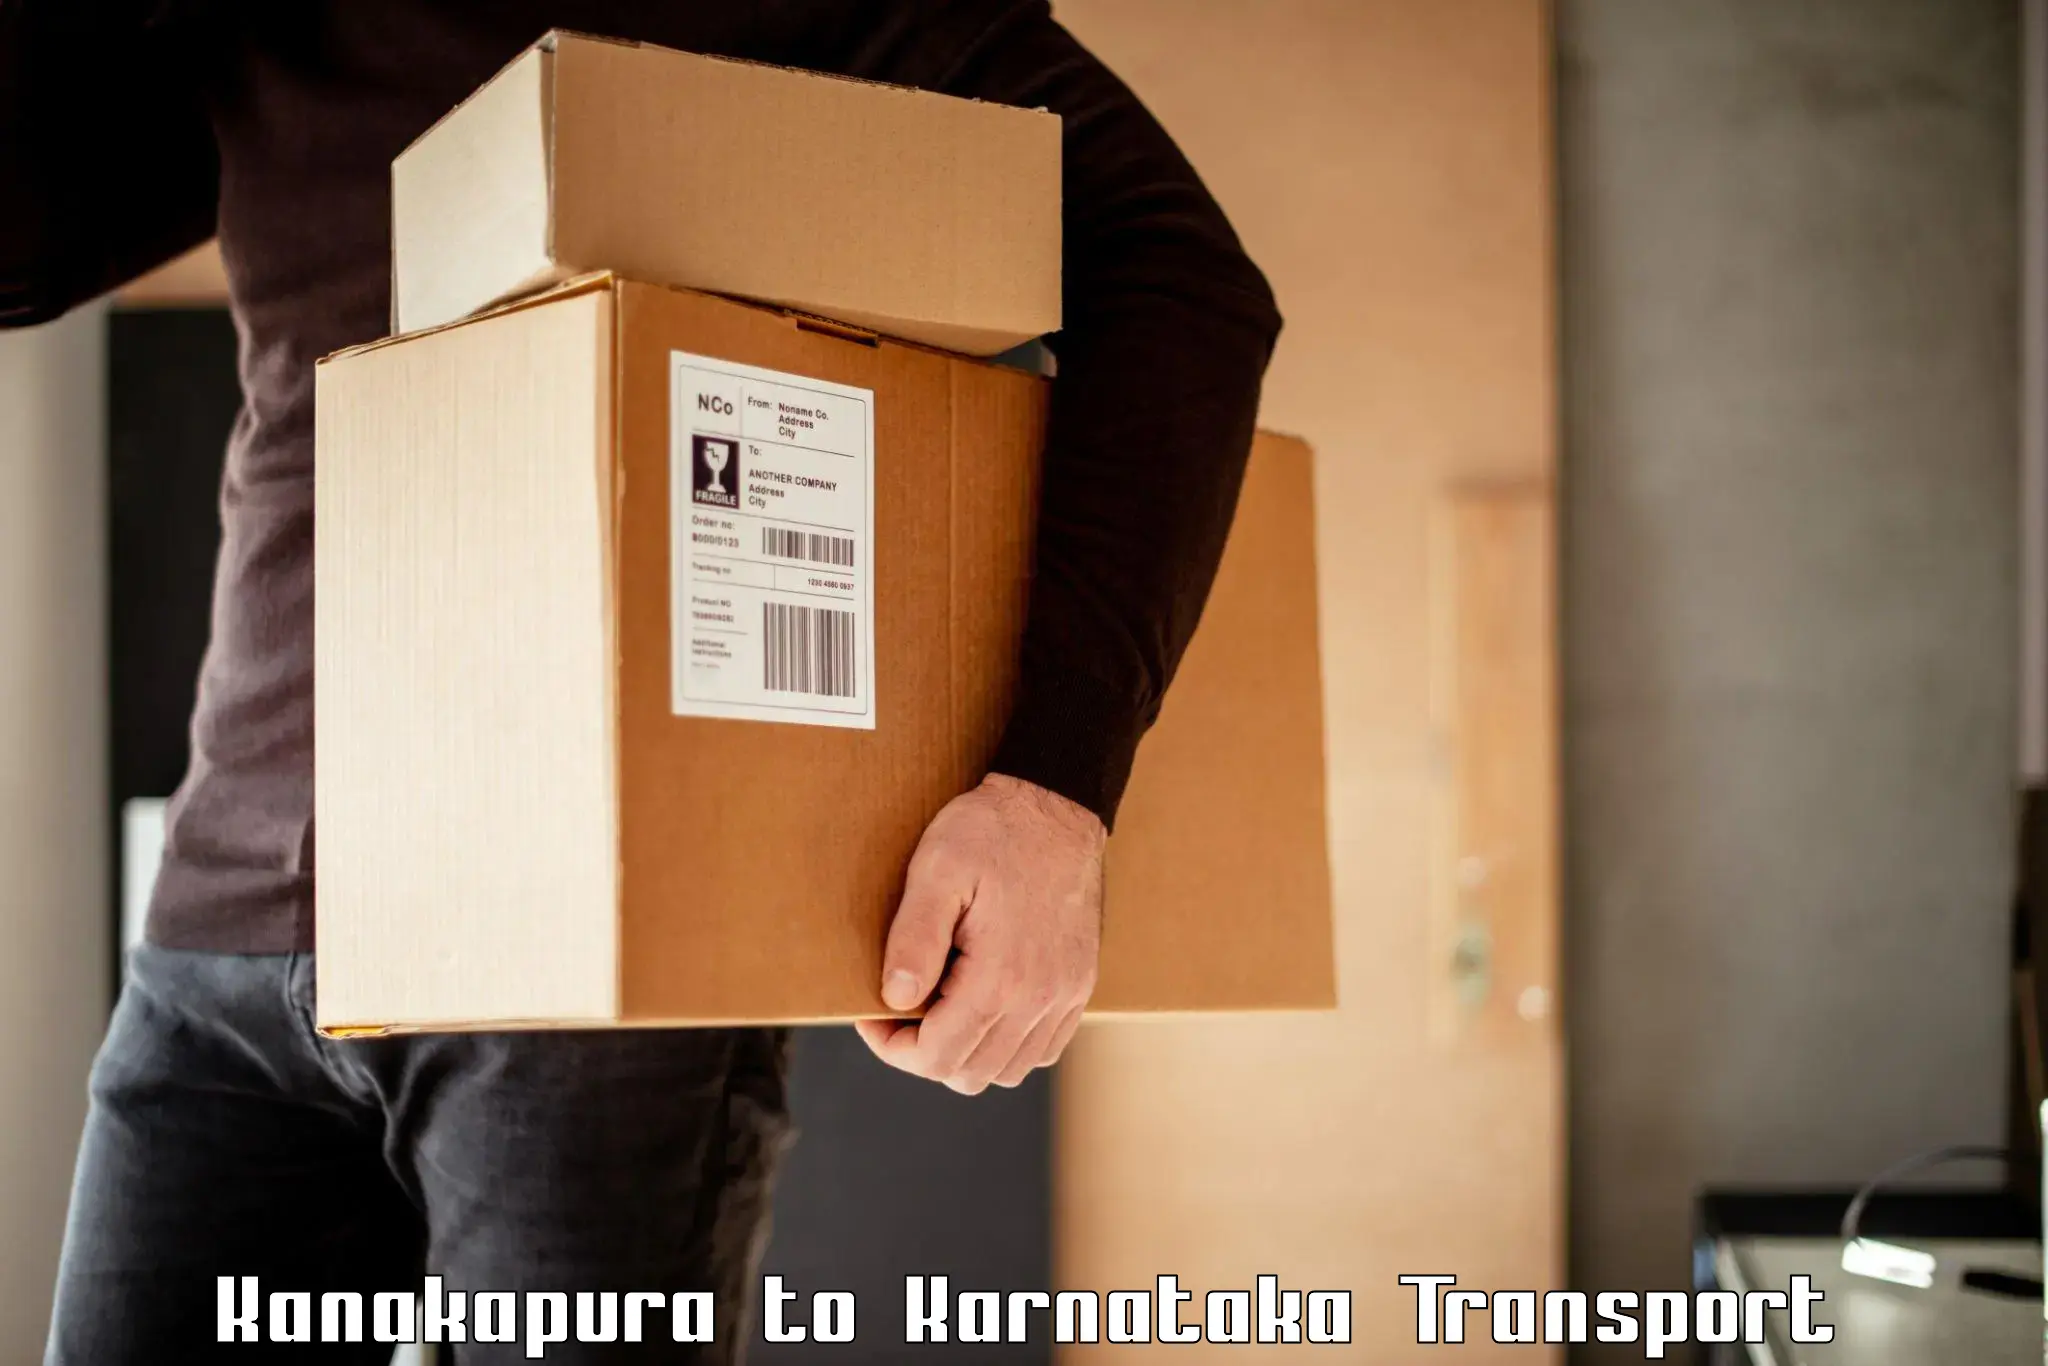 Cargo transportation services Kanakapura to Byndoor